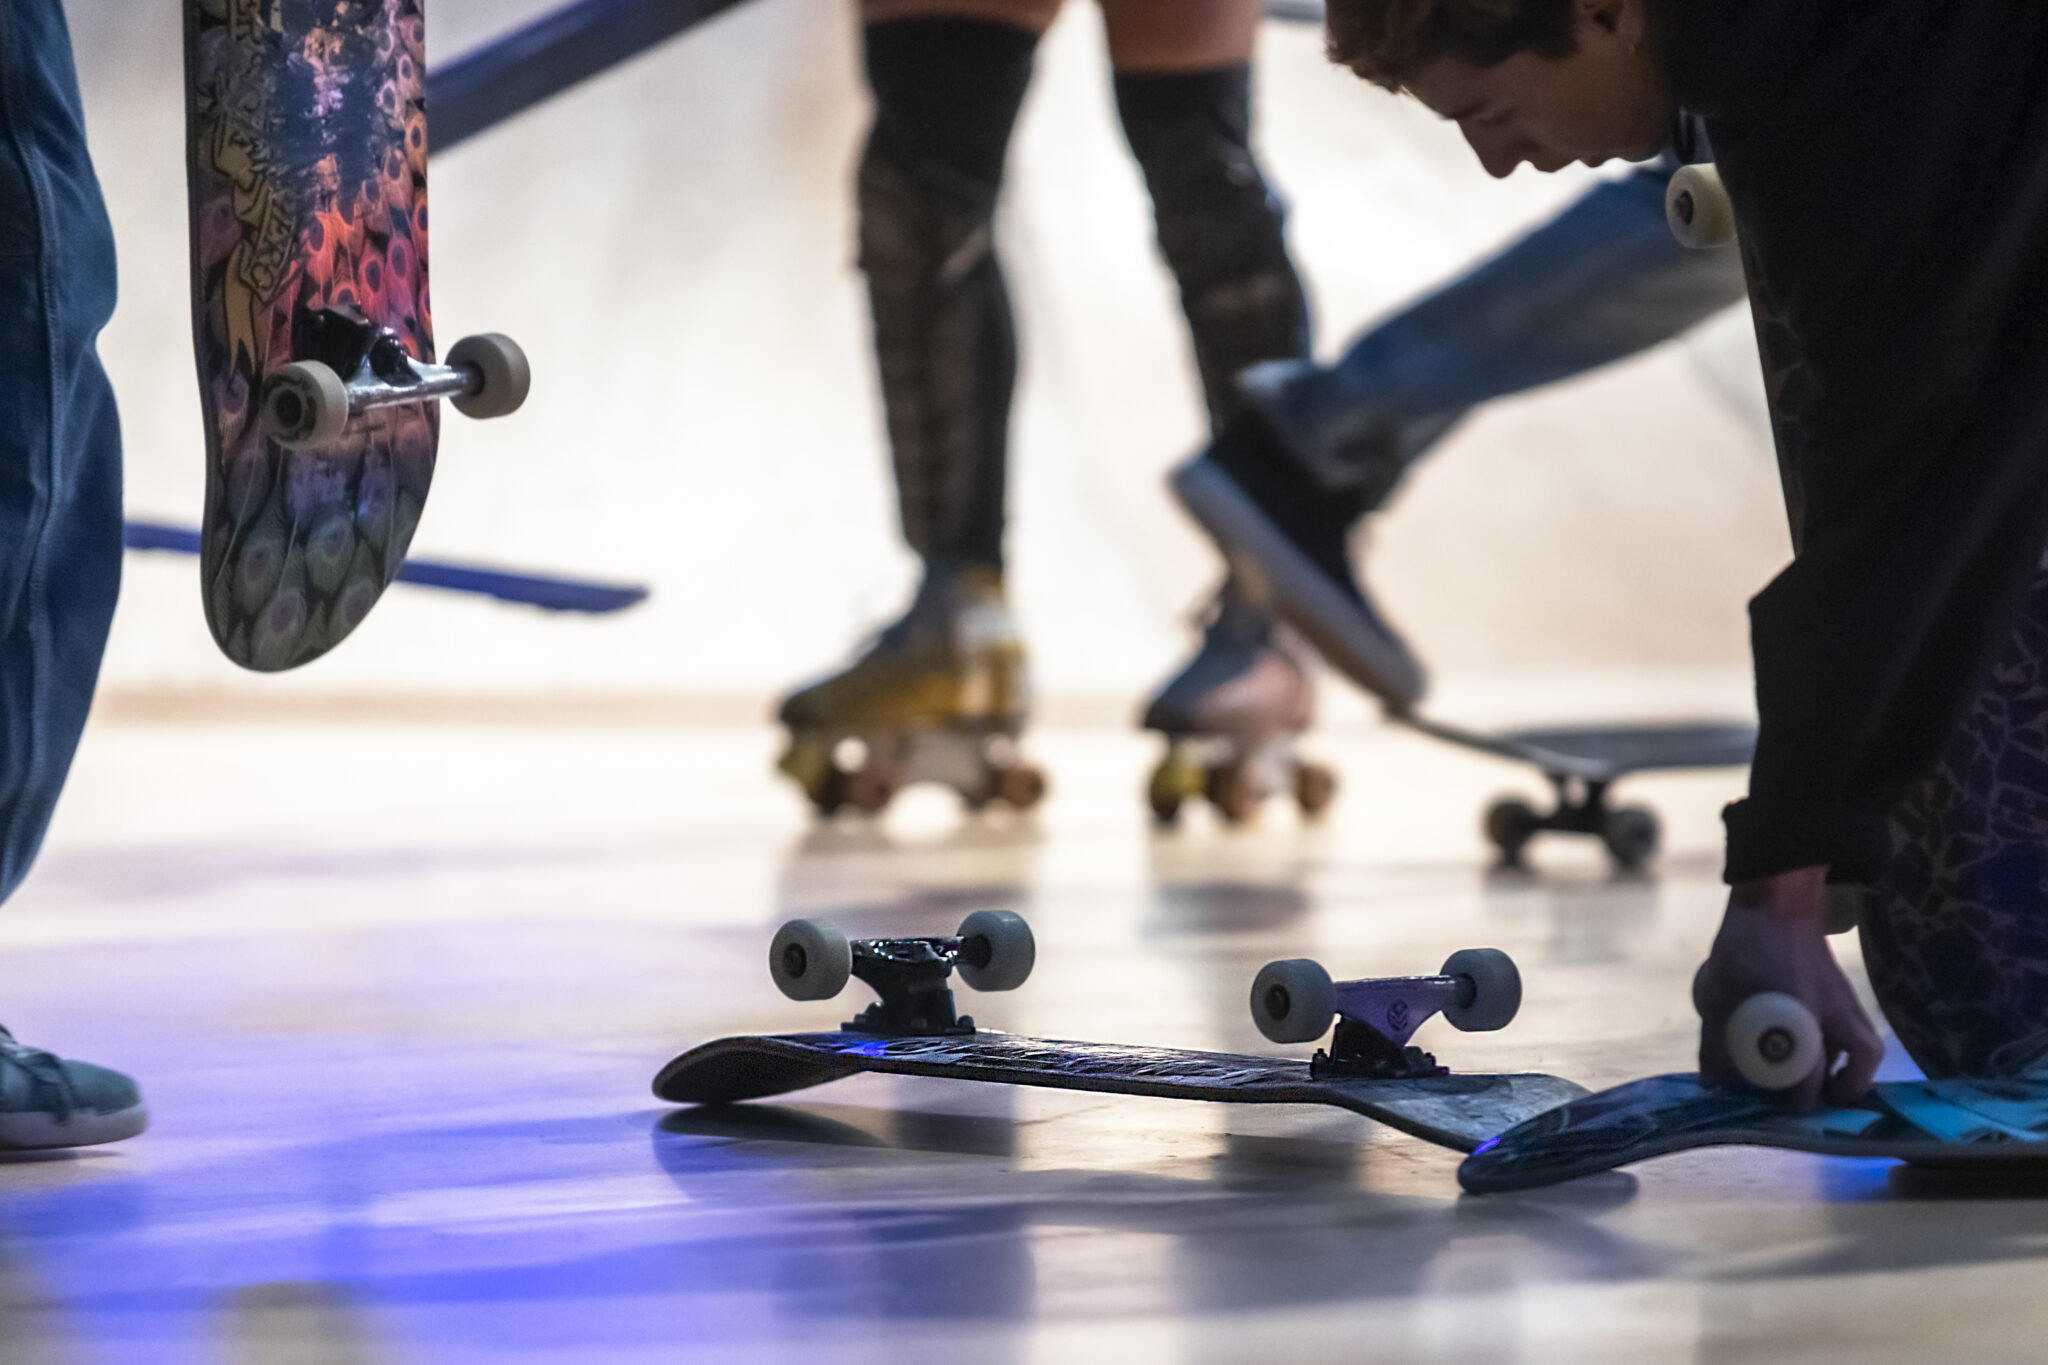 Un skate park à Montignac pour bientôt, courant avril 2021 - France Bleu